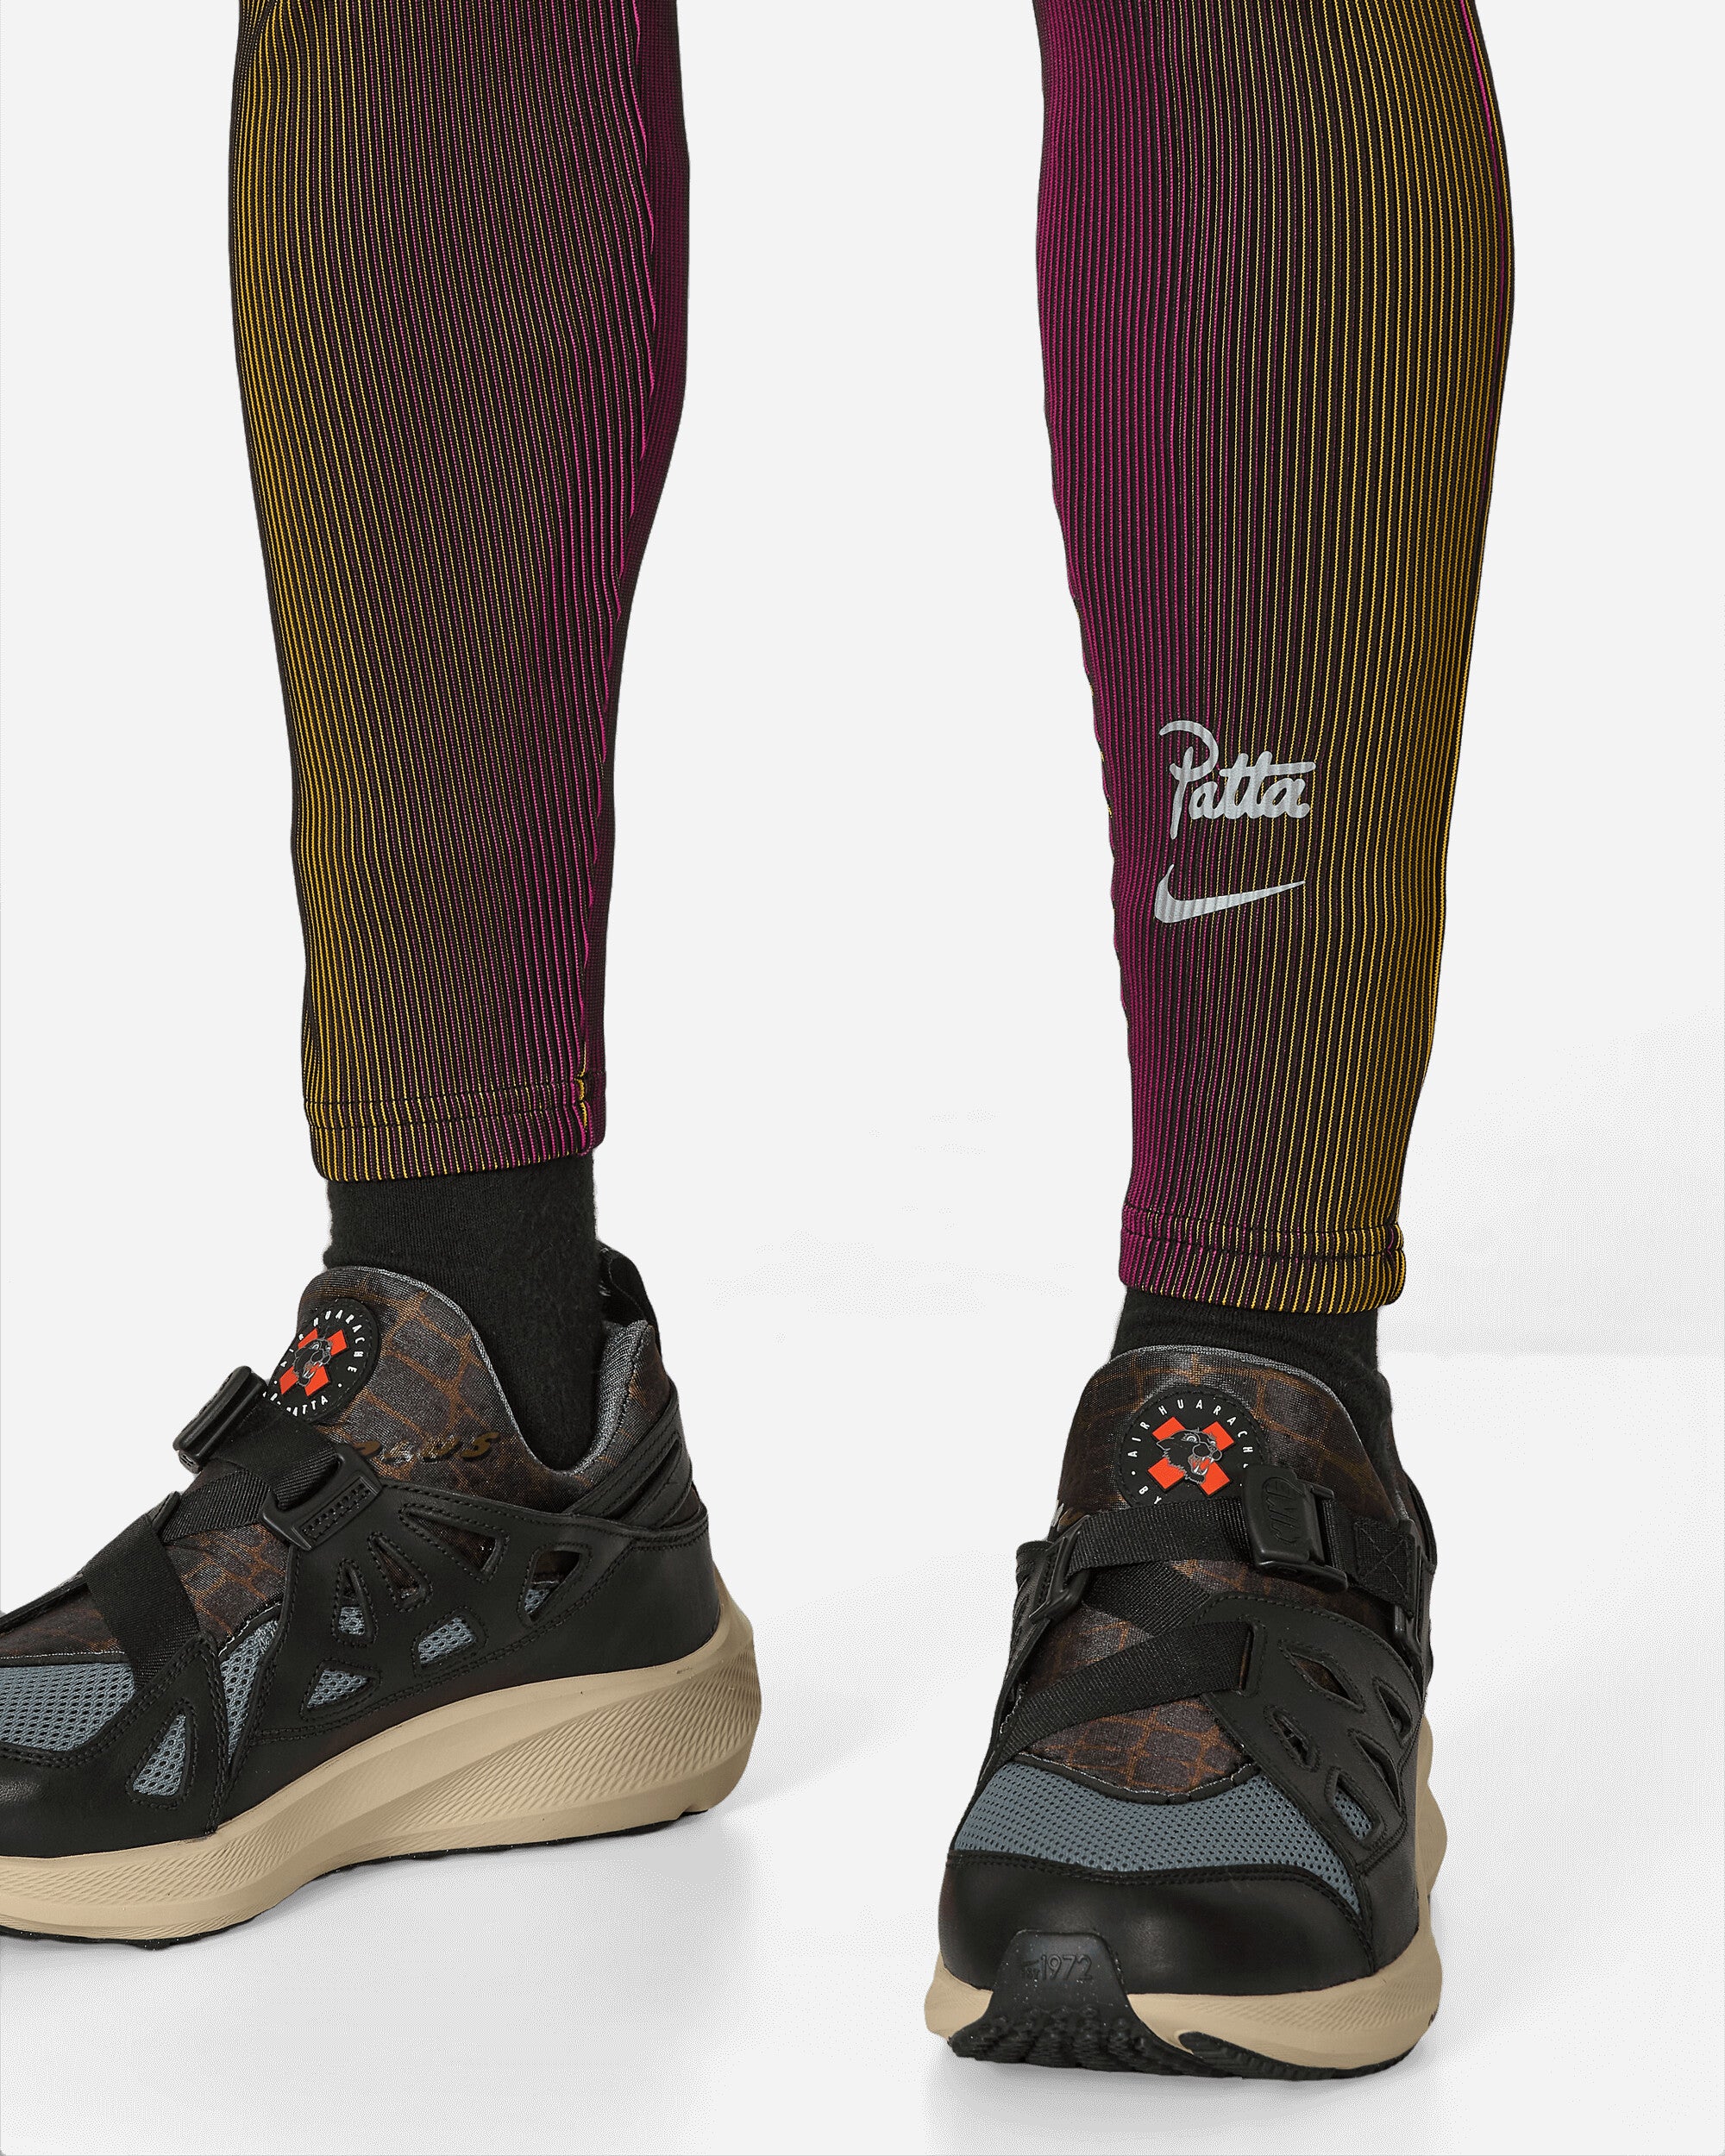 Nike M Nrg Patta Legging Fireberry Pants Sweatpants FJ3061-615